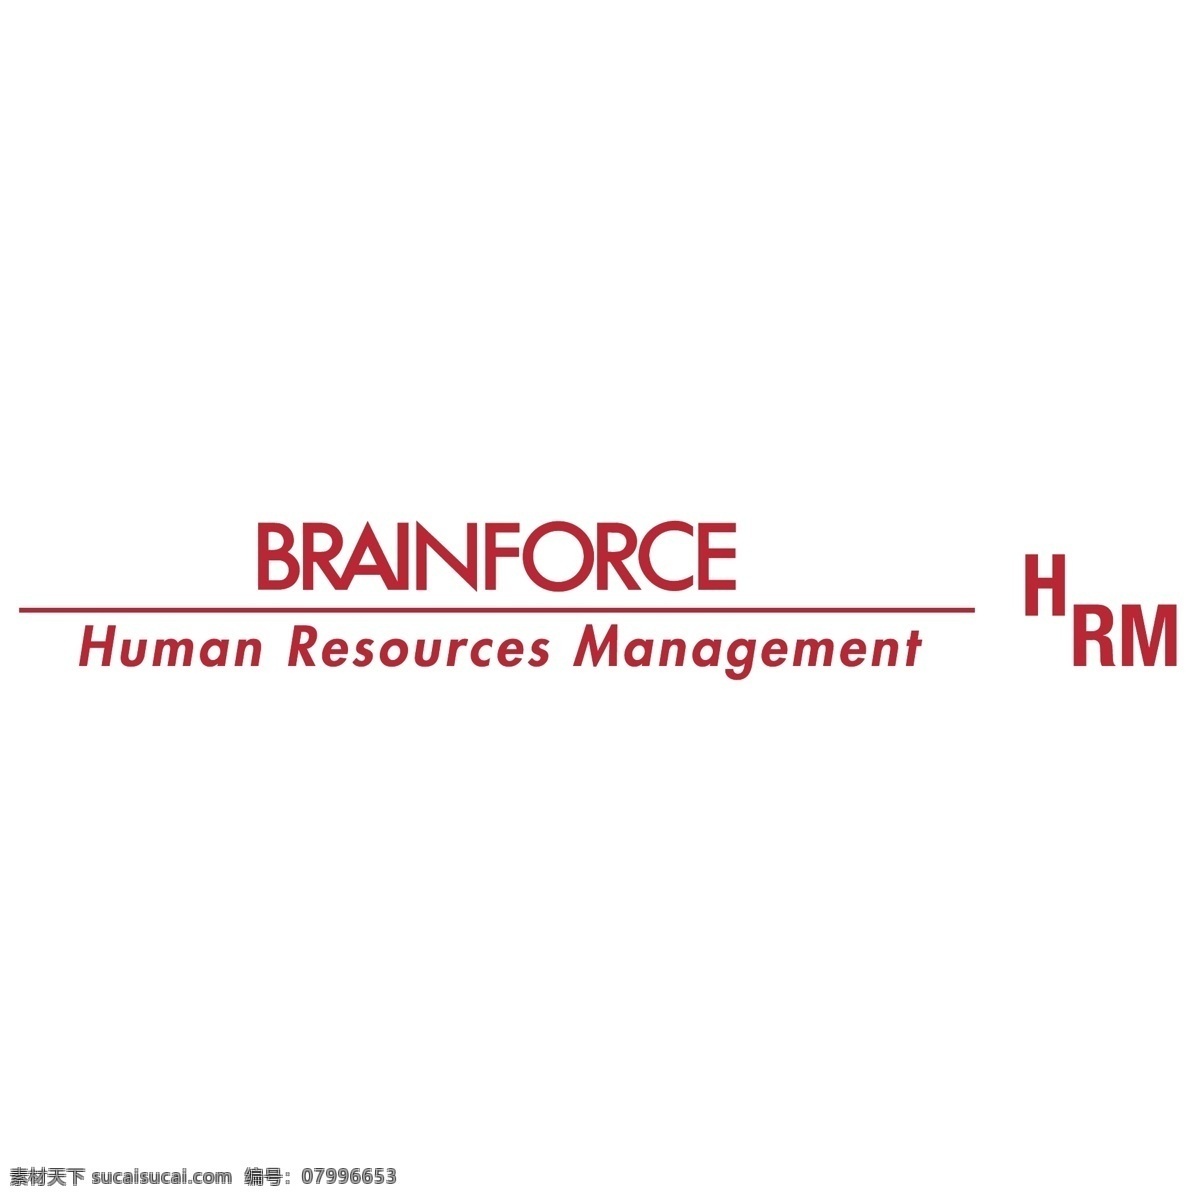 brainforce 人力资源 管理 标识 公司 免费 品牌 品牌标识 商标 矢量标志下载 免费矢量标识 矢量 psd源文件 logo设计